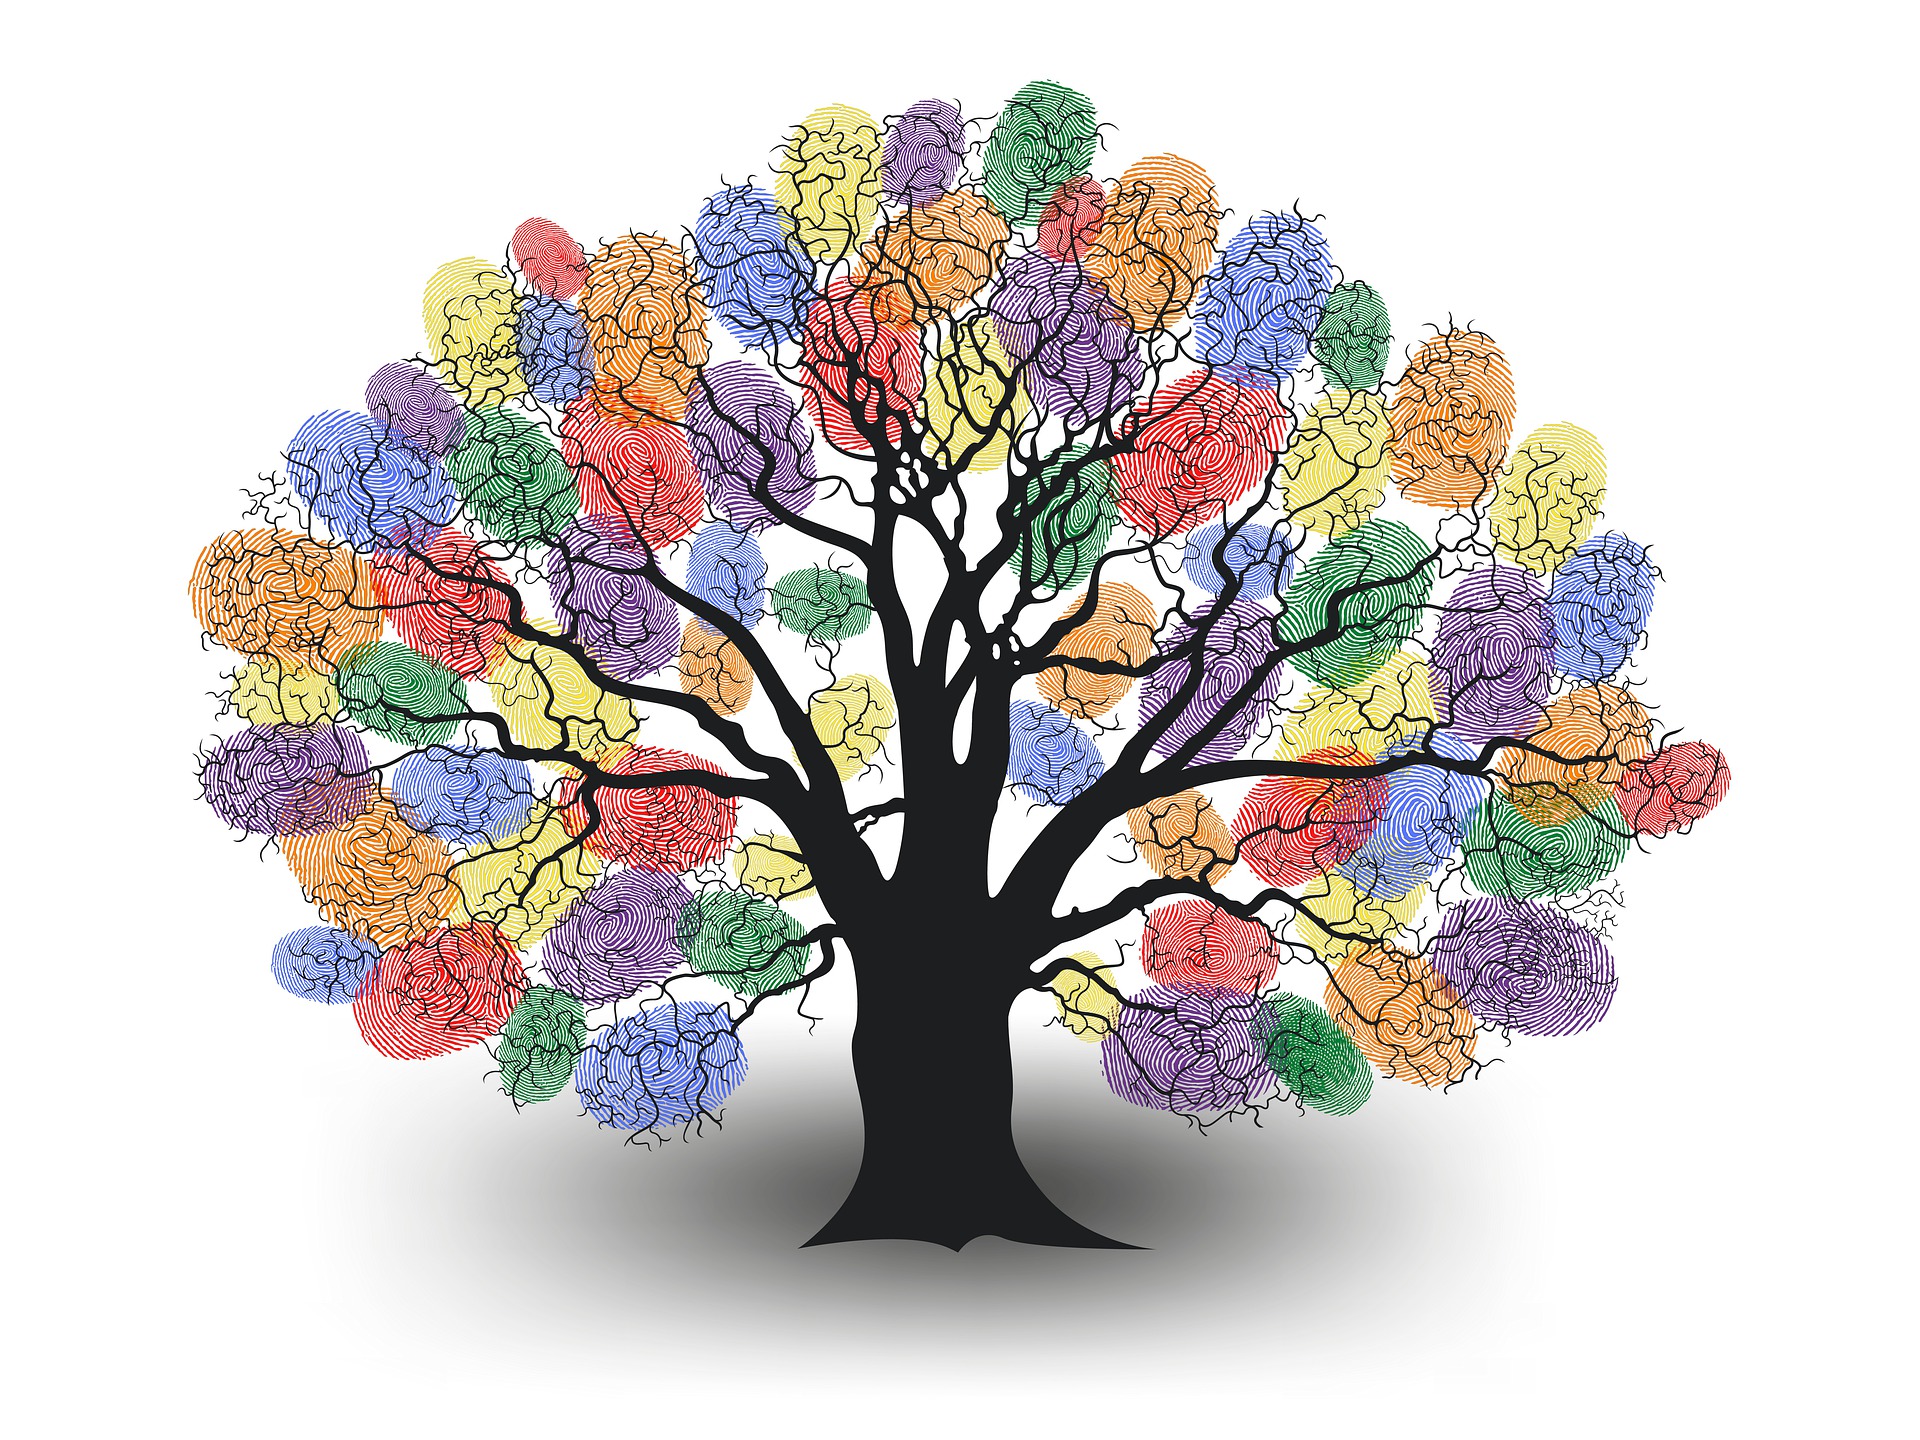 Piirroskuvassa puu, jonka lehvästö muodostuu värikkäistä sirmenjäljistä.